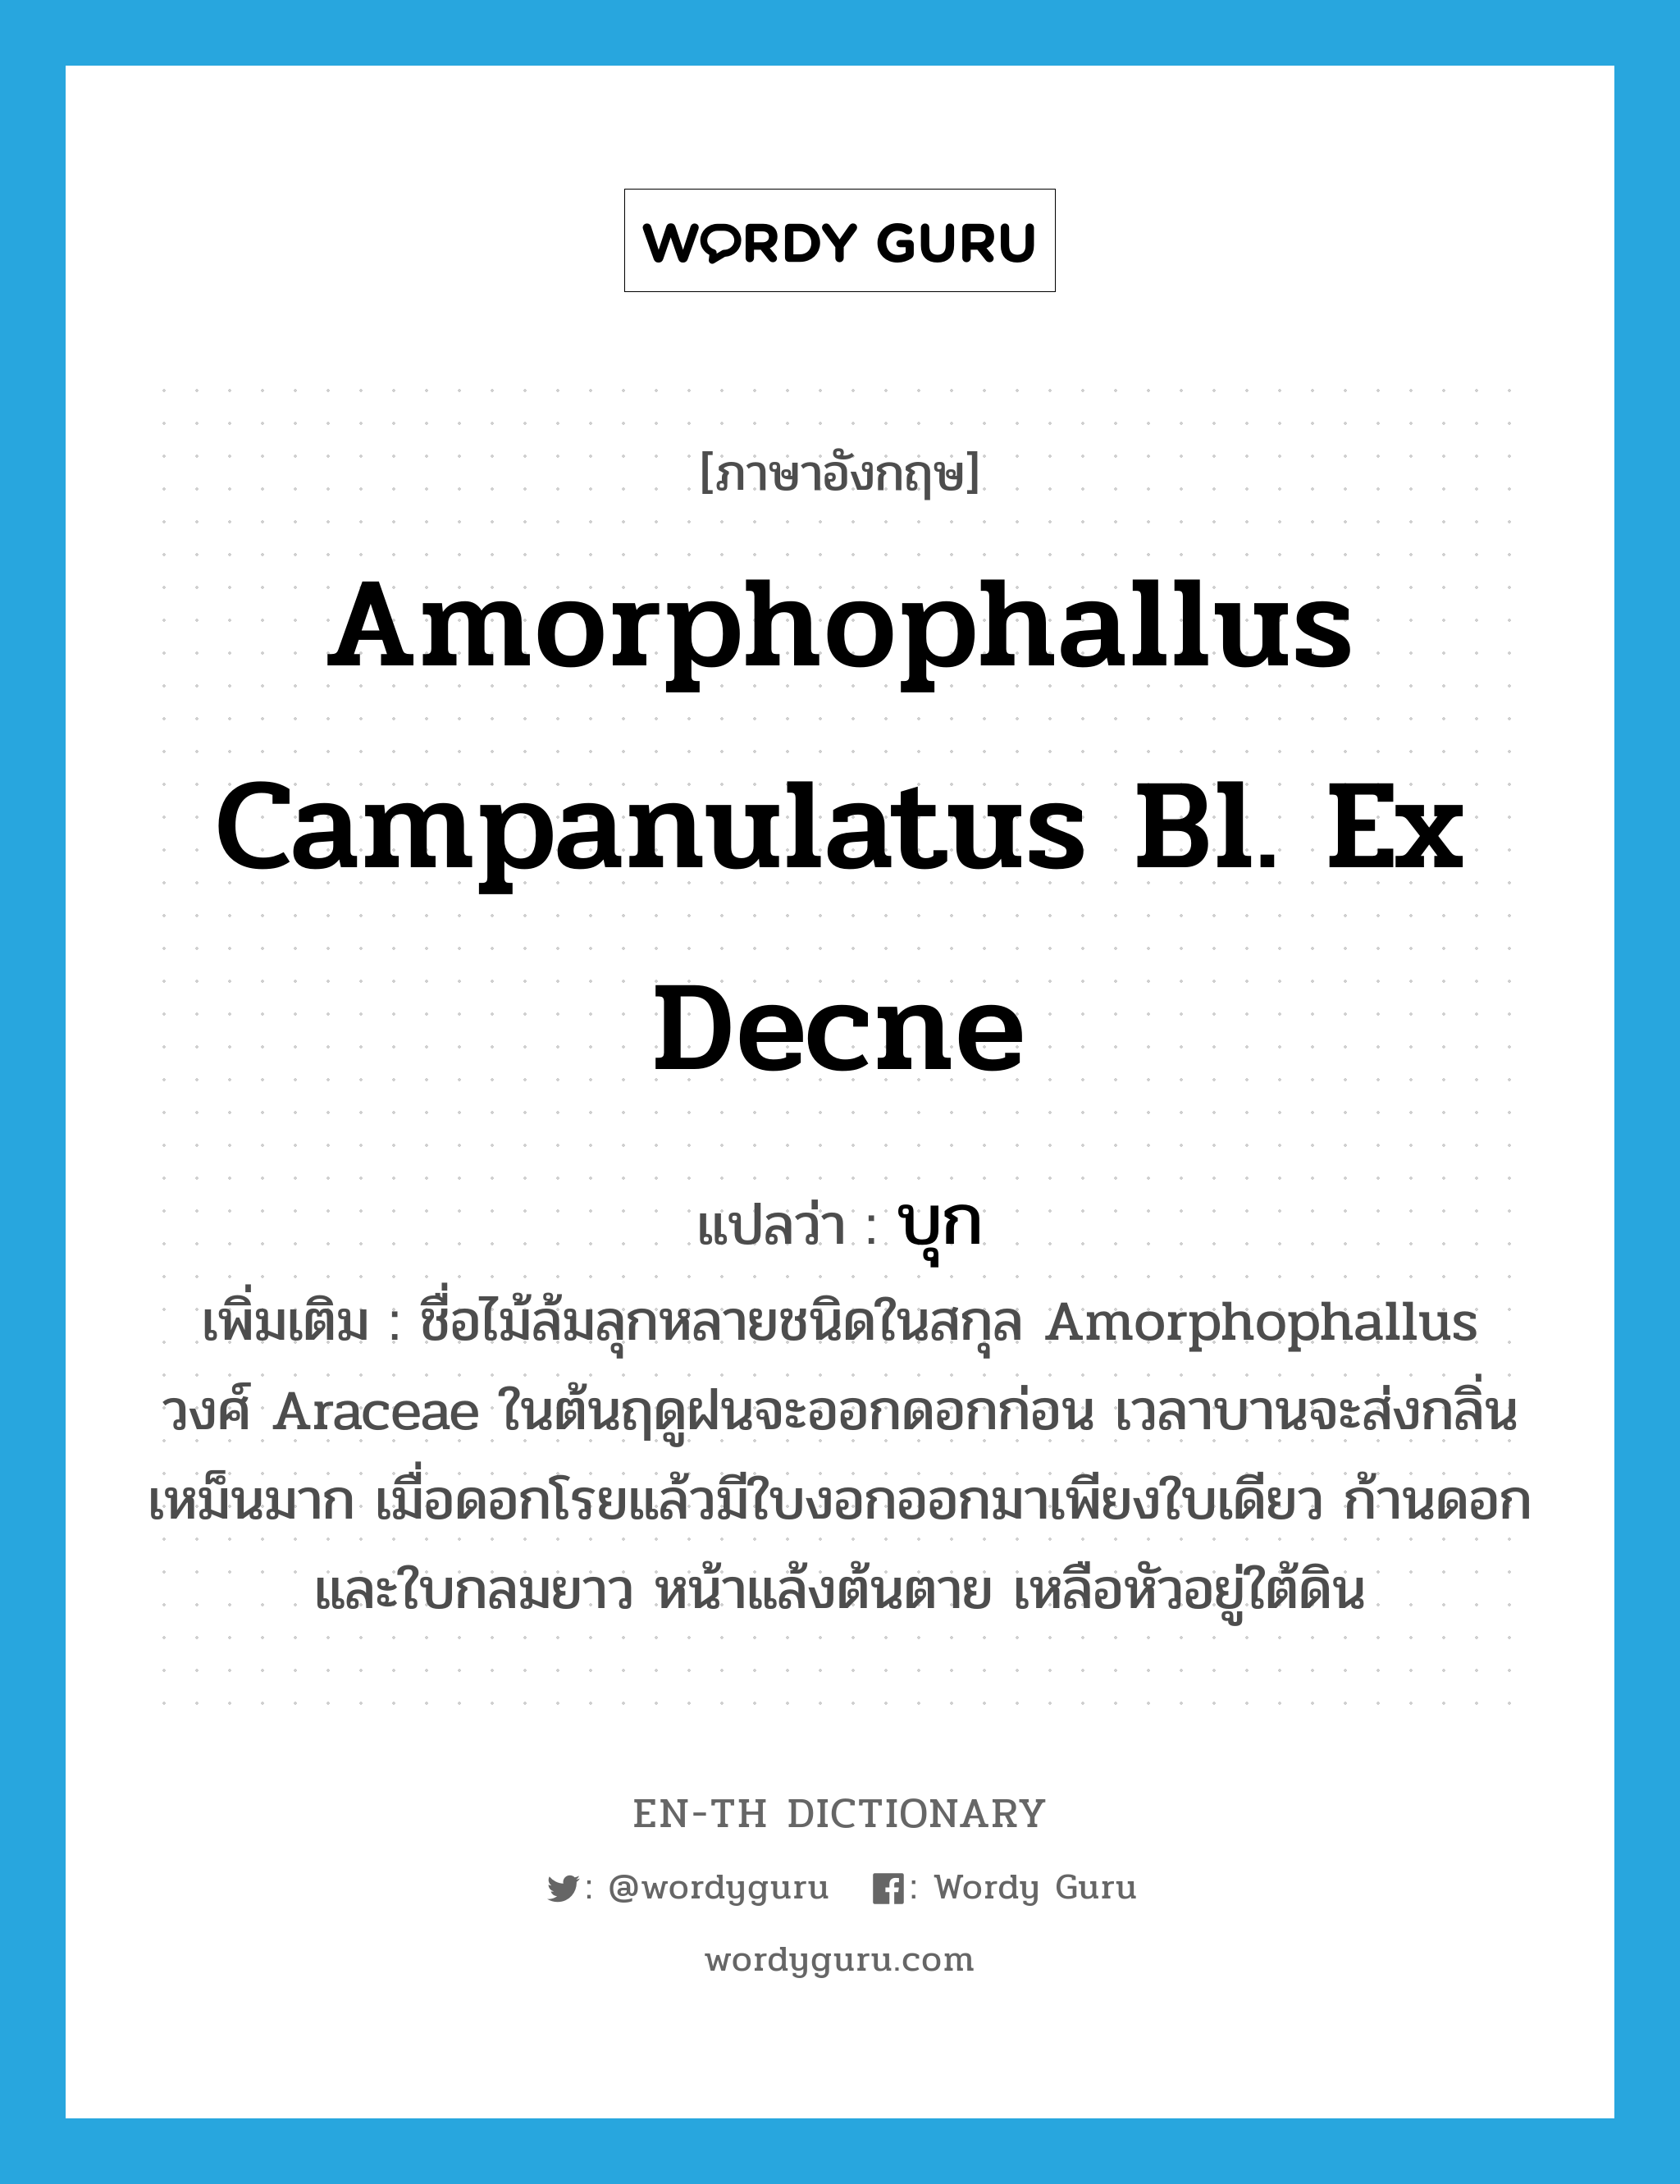 บุก ภาษาอังกฤษ?, คำศัพท์ภาษาอังกฤษ บุก แปลว่า Amorphophallus campanulatus Bl. ex Decne ประเภท DET เพิ่มเติม ชื่อไม้ล้มลุกหลายชนิดในสกุล Amorphophallus วงศ์ Araceae ในต้นฤดูฝนจะออกดอกก่อน เวลาบานจะส่งกลิ่นเหม็นมาก เมื่อดอกโรยแล้วมีใบงอกออกมาเพียงใบเดียว ก้านดอกและใบกลมยาว หน้าแล้งต้นตาย เหลือหัวอยู่ใต้ดิน หมวด DET